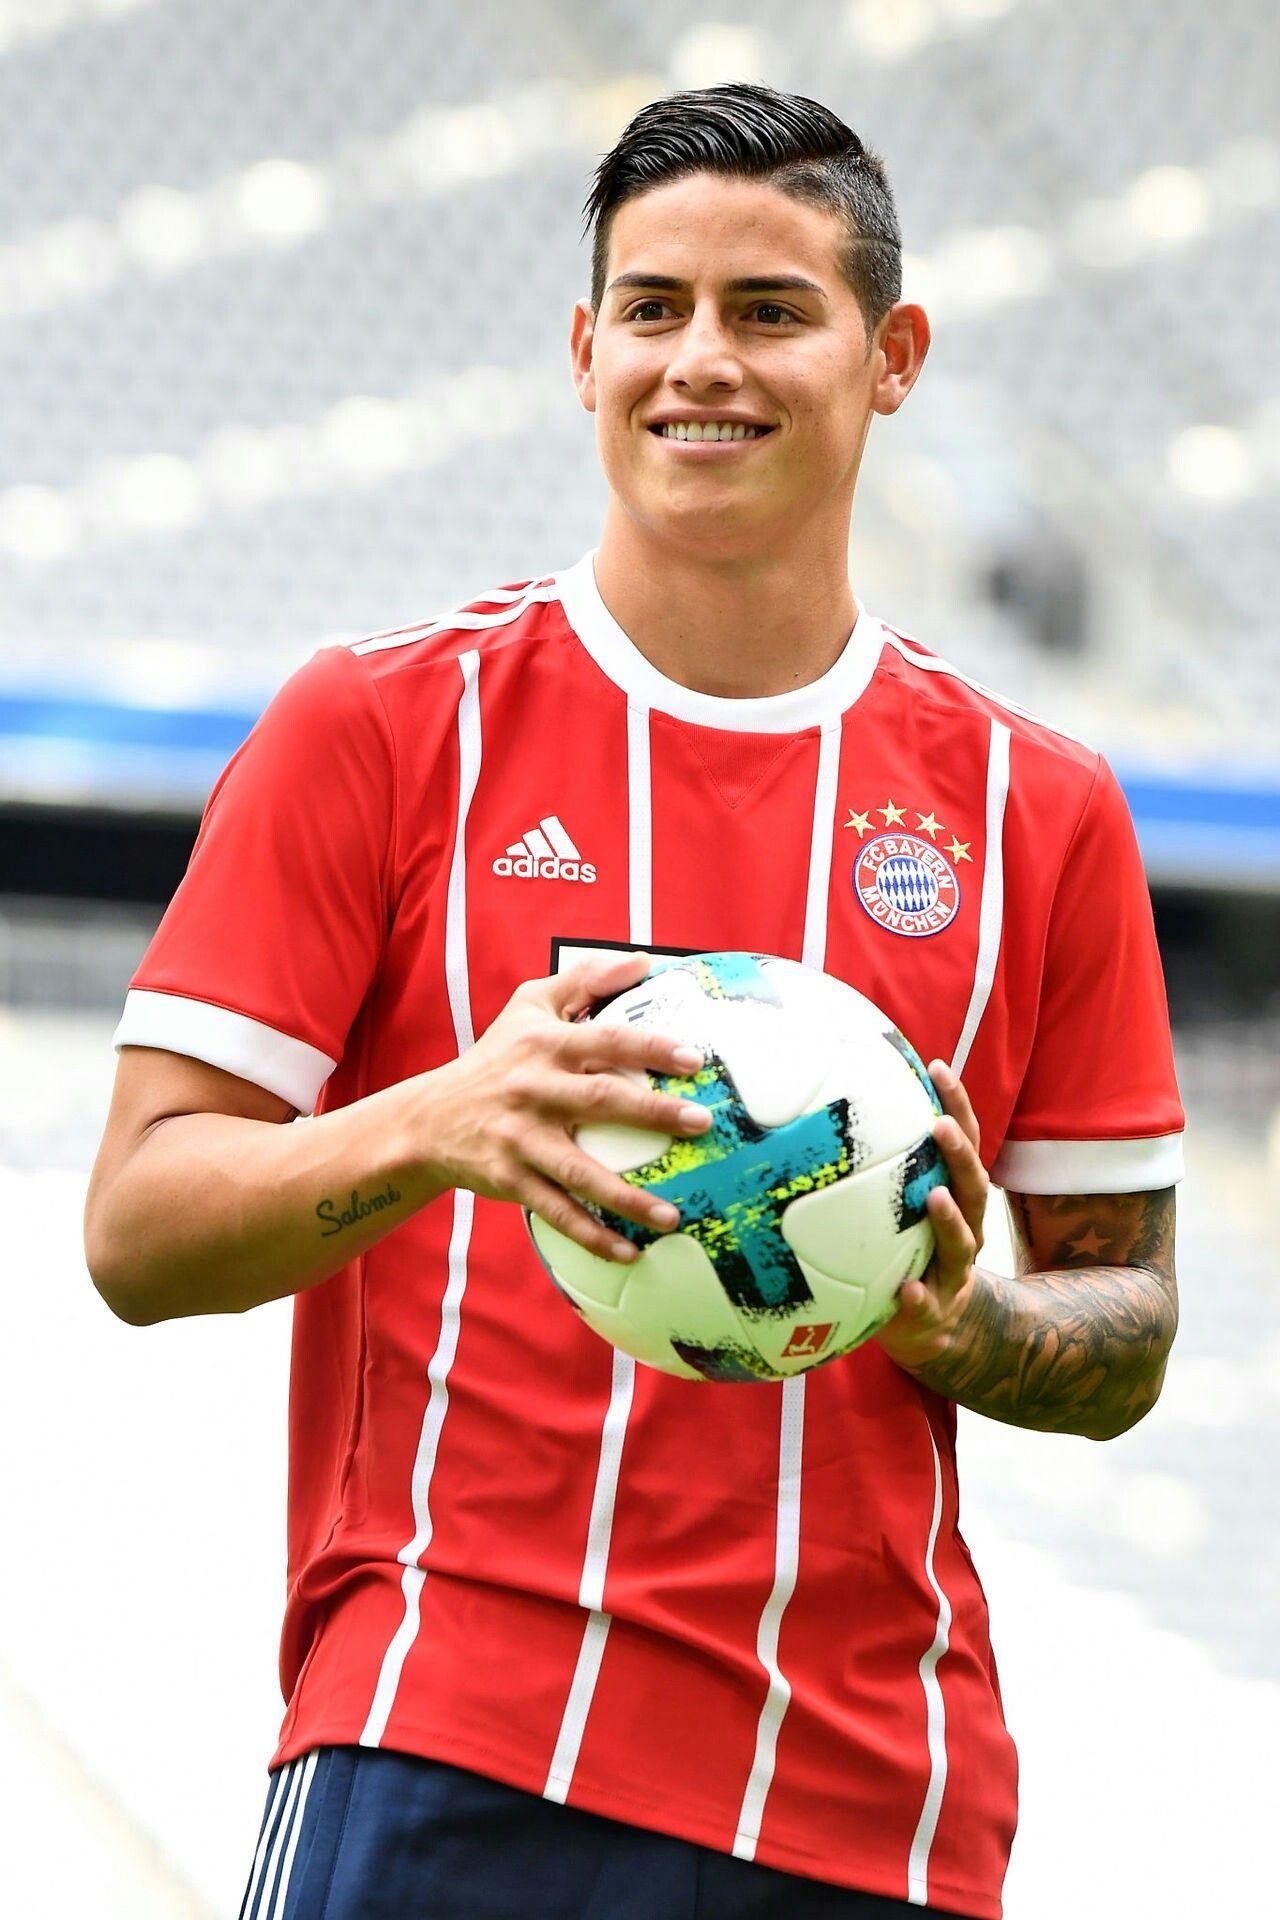 Bayern ❤❤❤❤❤❤❤❤. James